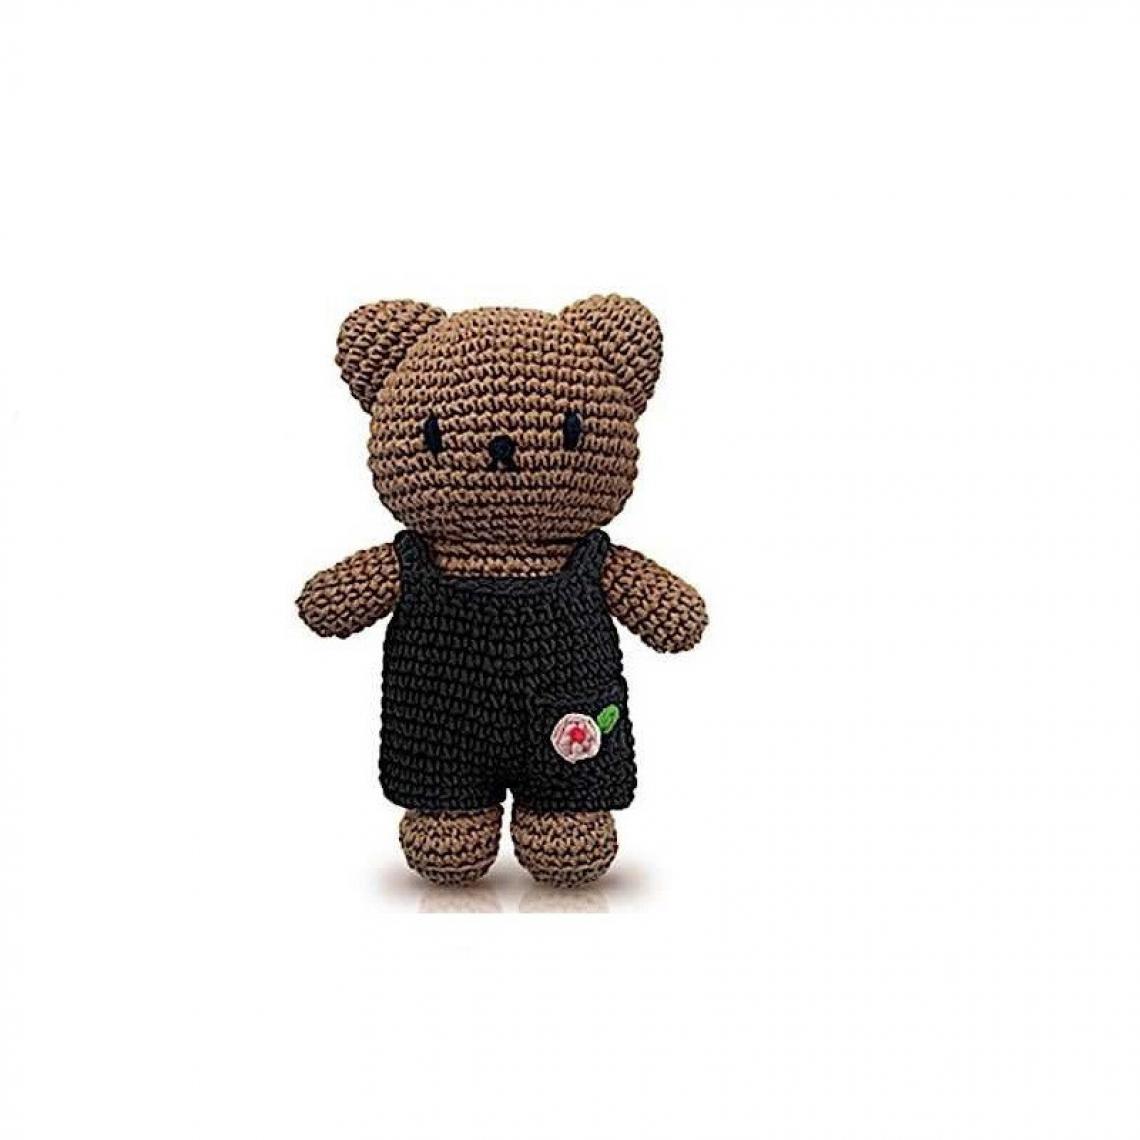 Ac-Deco - Peluche Boris en crochet - Salopette - L 10 x l 5 x H 25 cm - Noir et rose - Doudous